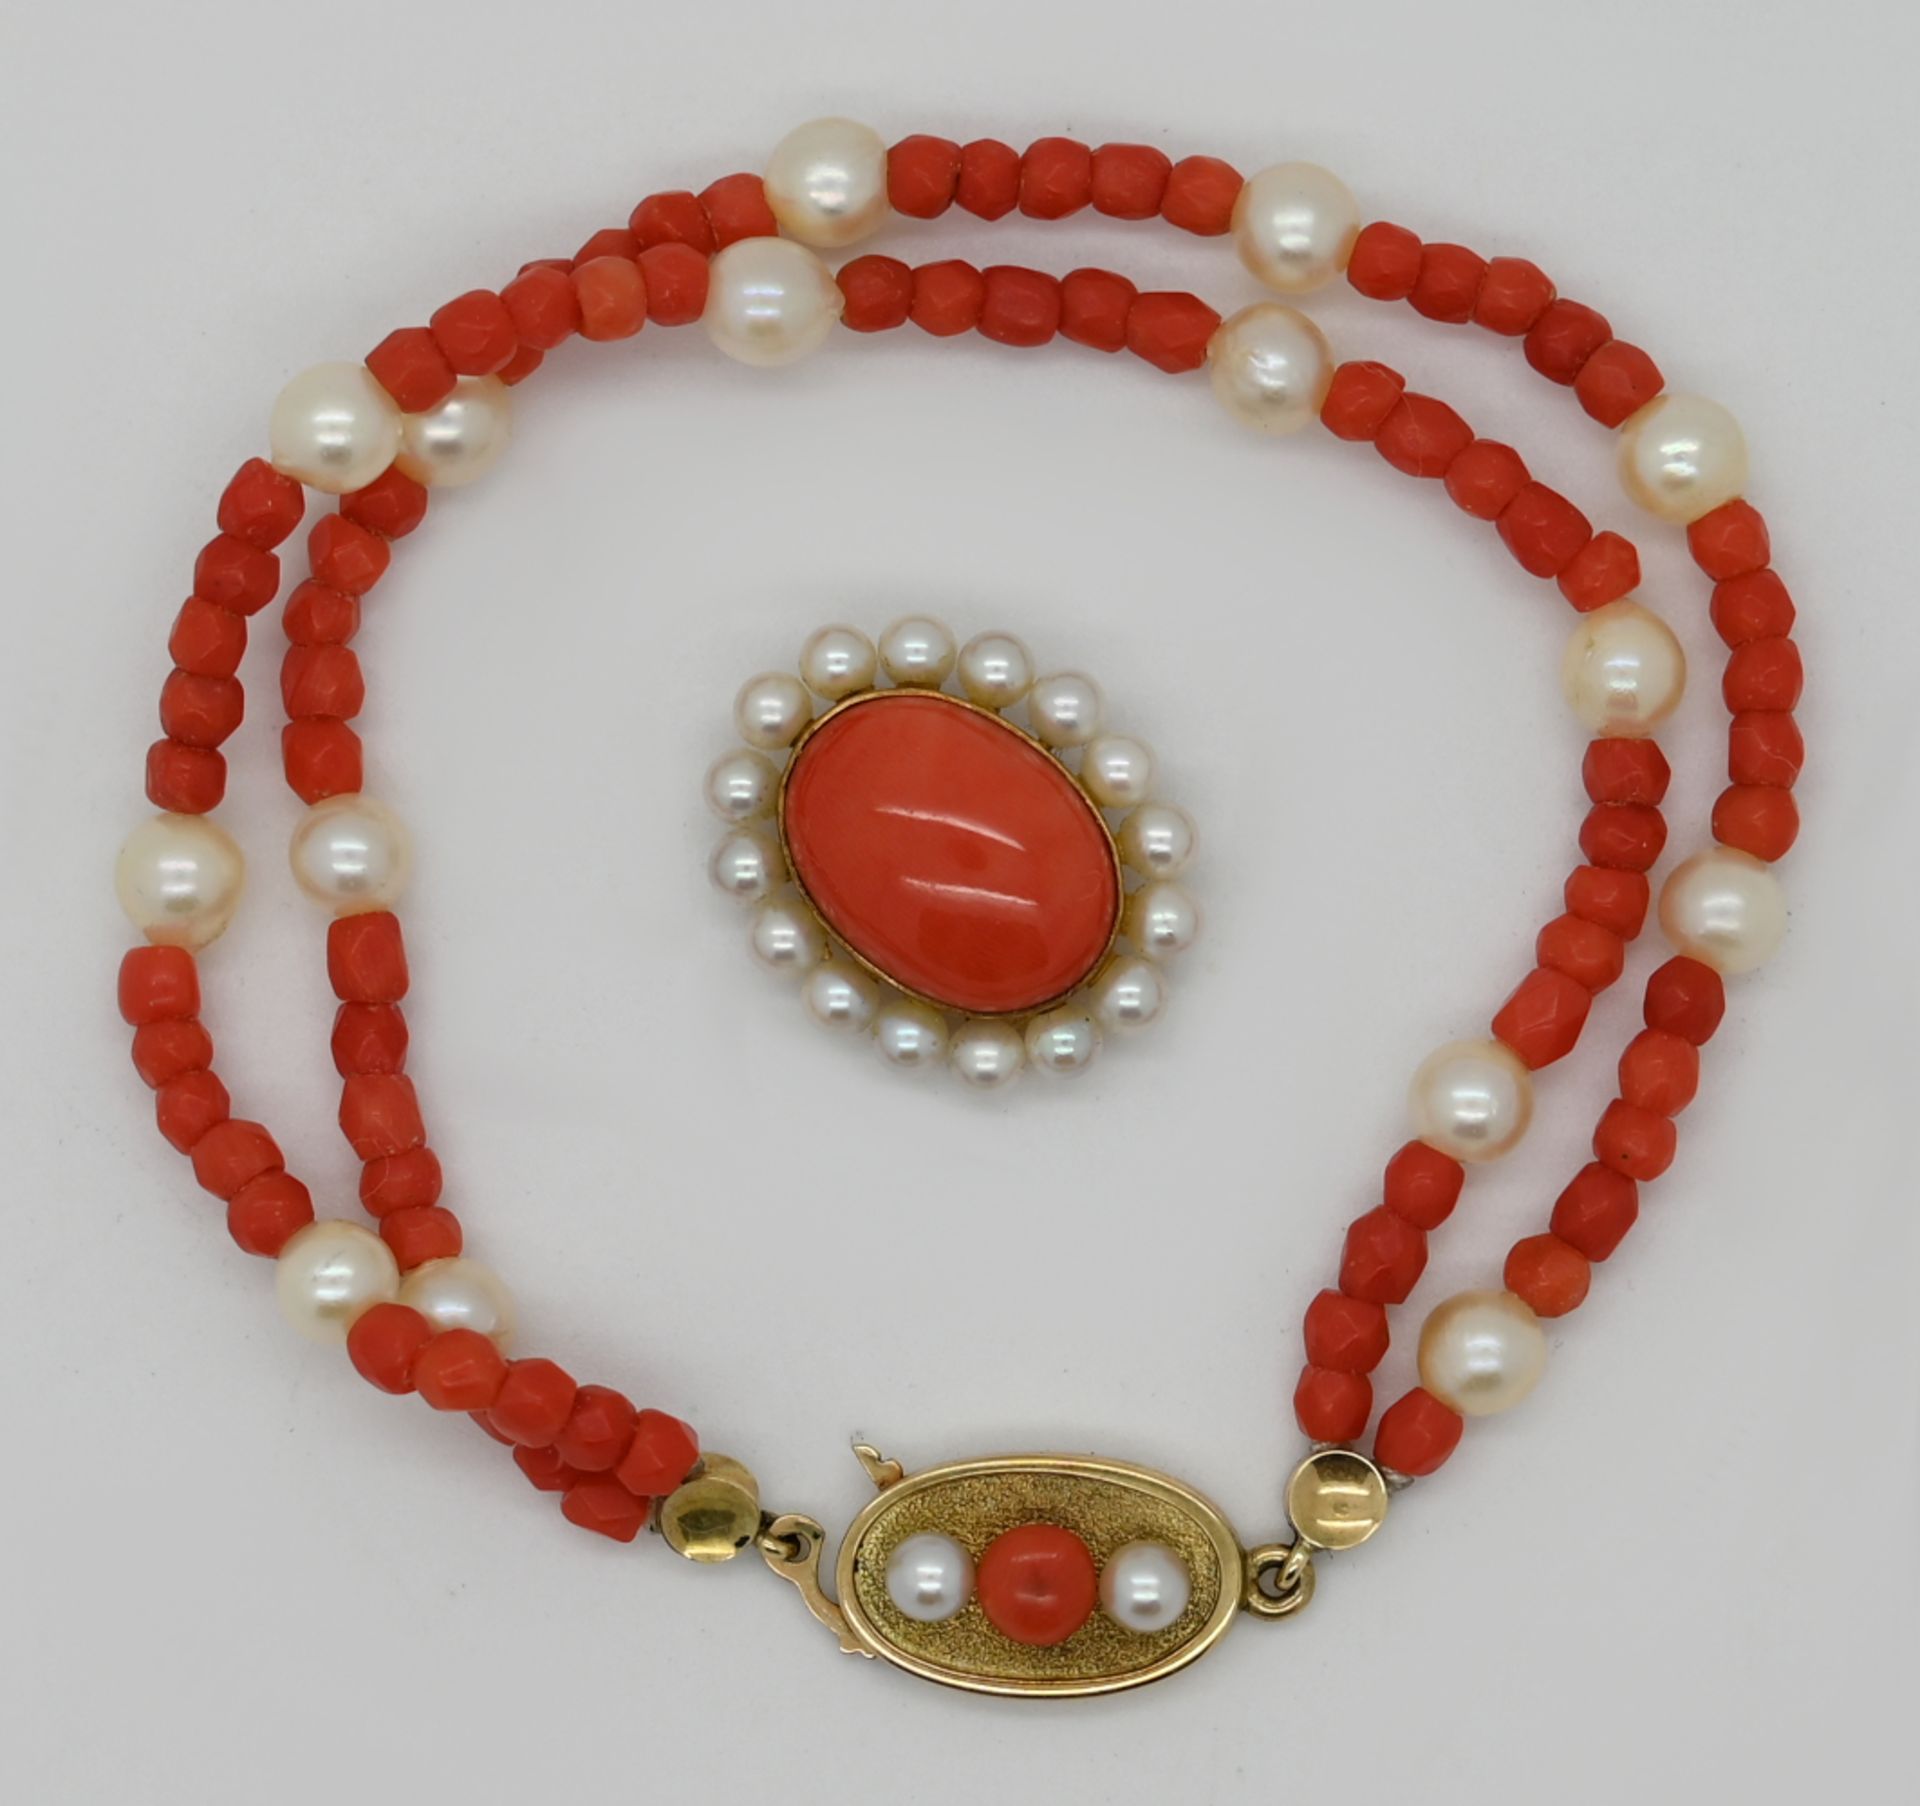 1 Damenarmband GG 14ct., mit Korallen und Perlen sowie 1 Anhänger, Handarbeit, undeutlich gestempelt